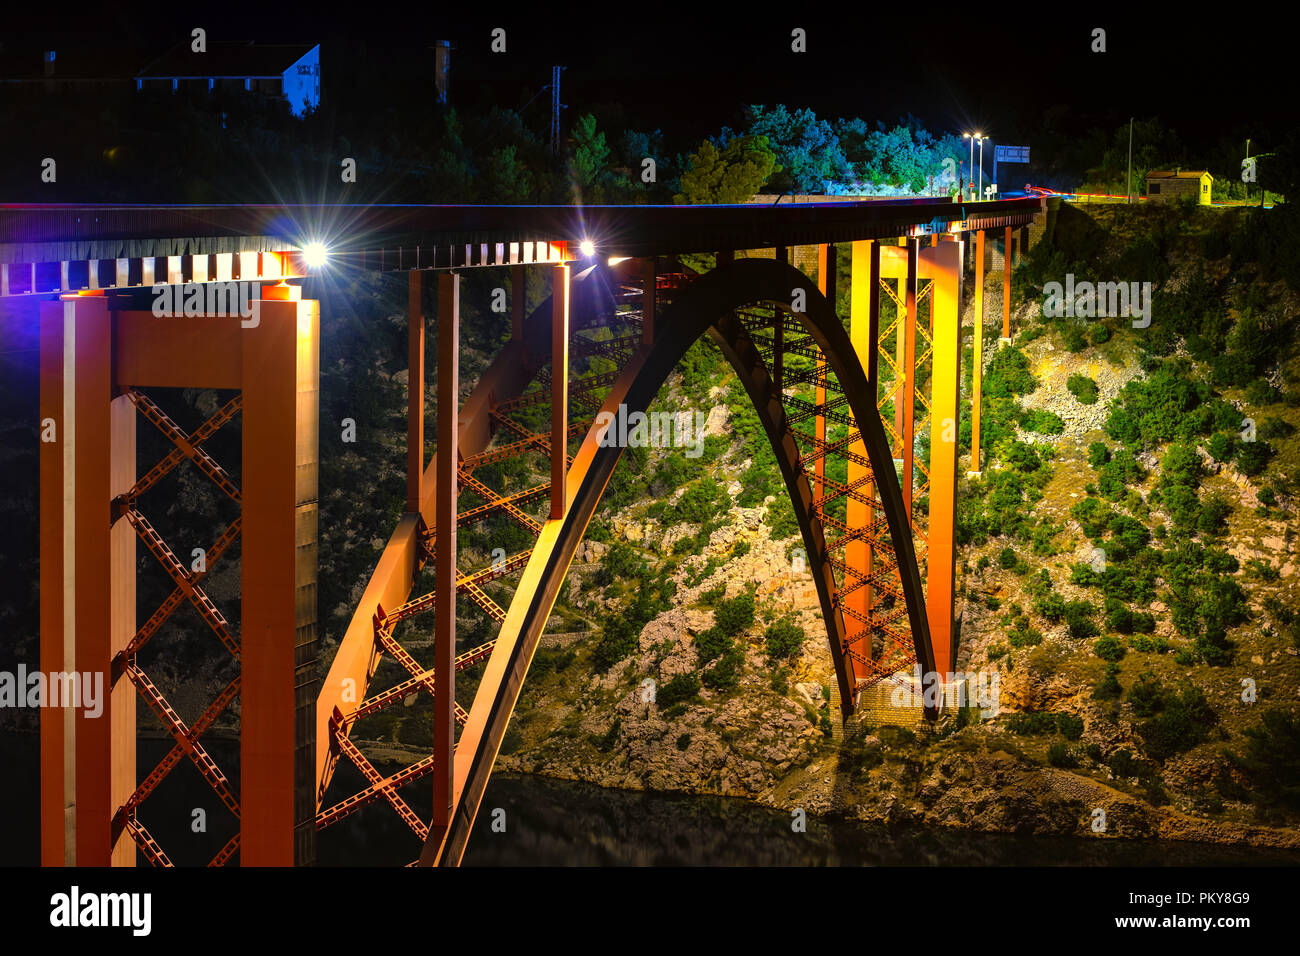 Illuminated bridge at night, steel arch construction Stock Photo